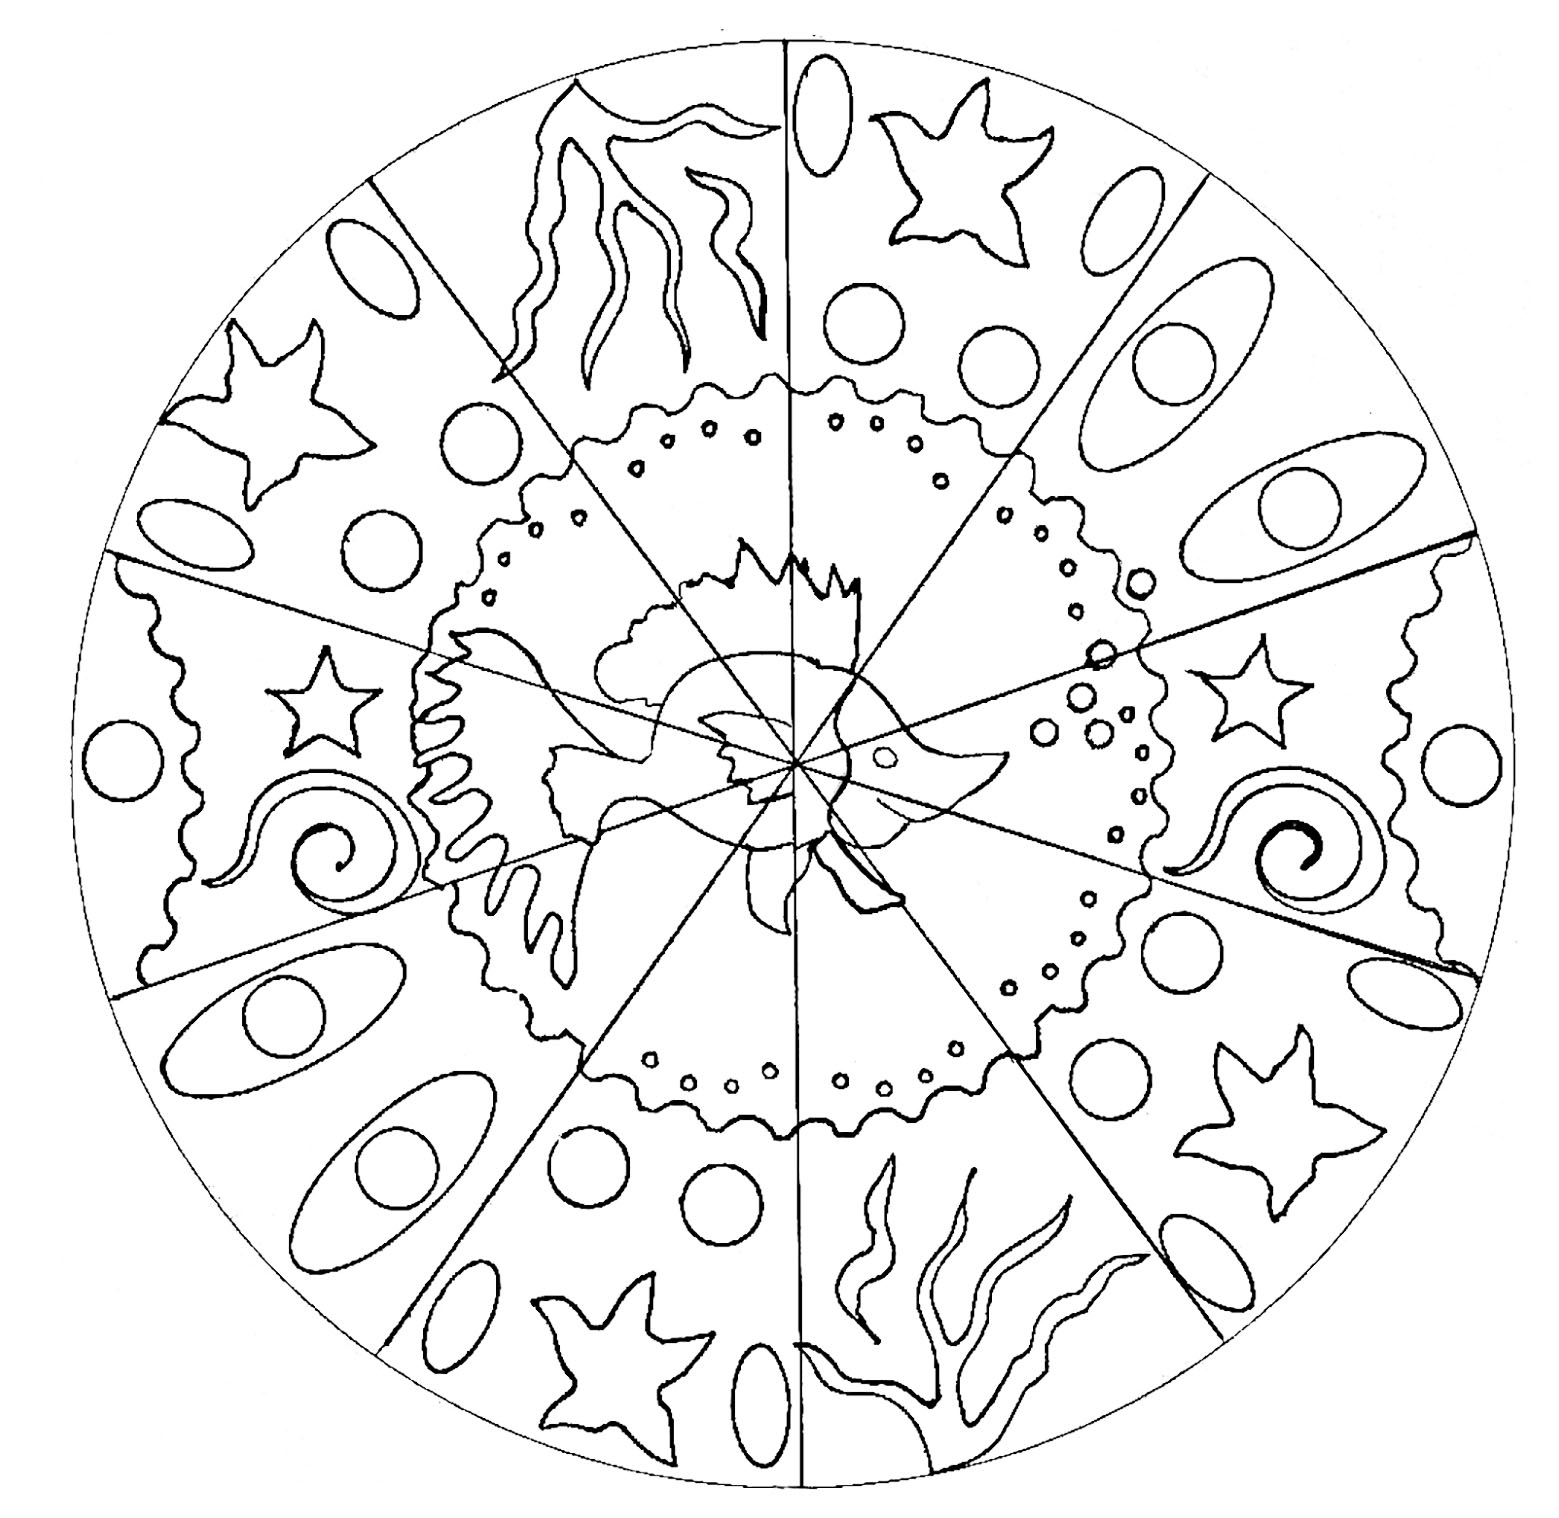 Ein Ausmalbild von Mandala für die Jüngsten, niedriger Schwierigkeitsgrad. In der Mitte ist ein hübscher Fisch